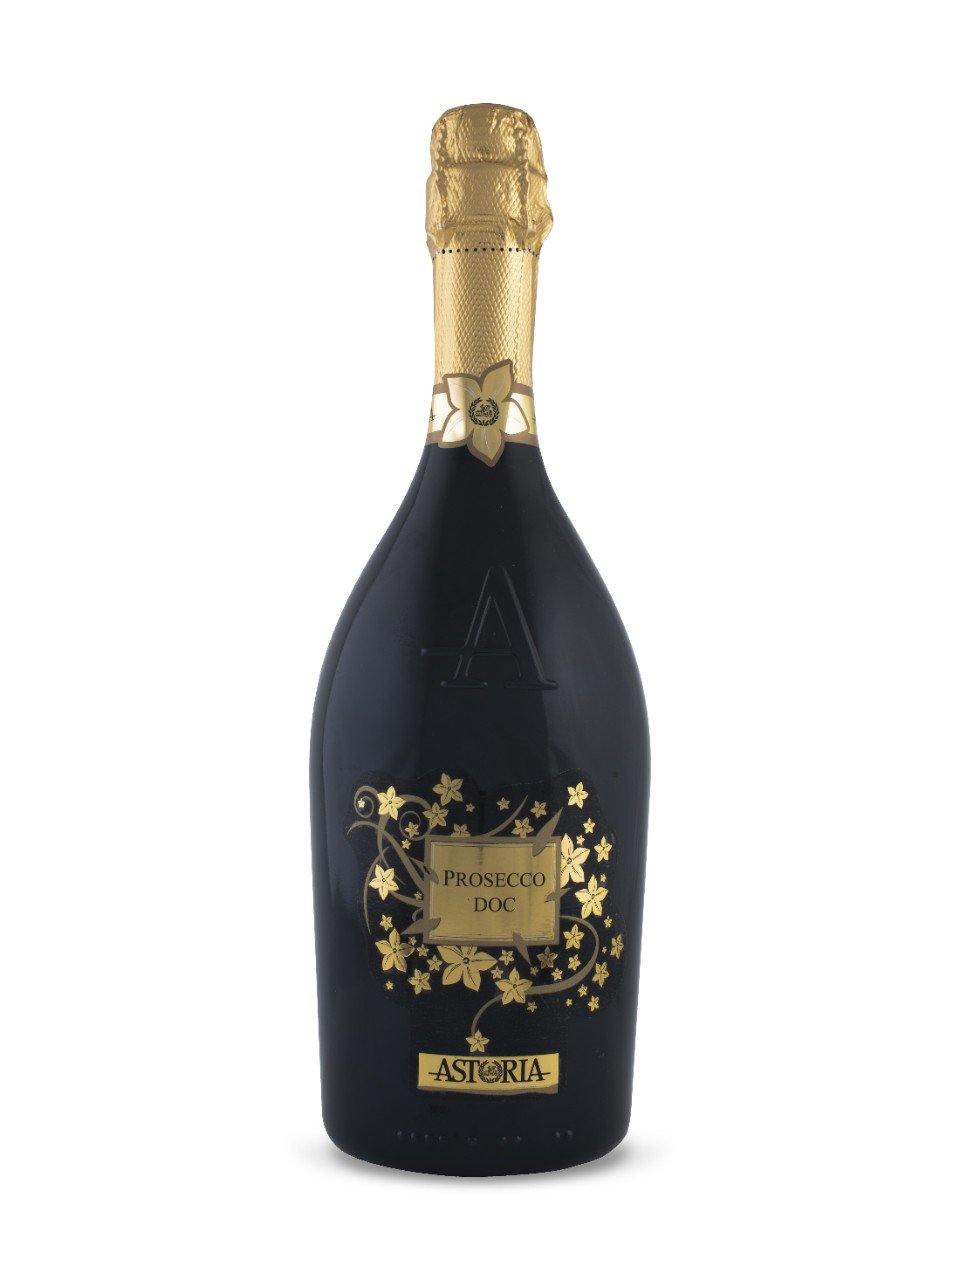 Astoria Prosecco Prosecco 750 mL bottle - Speedy Booze